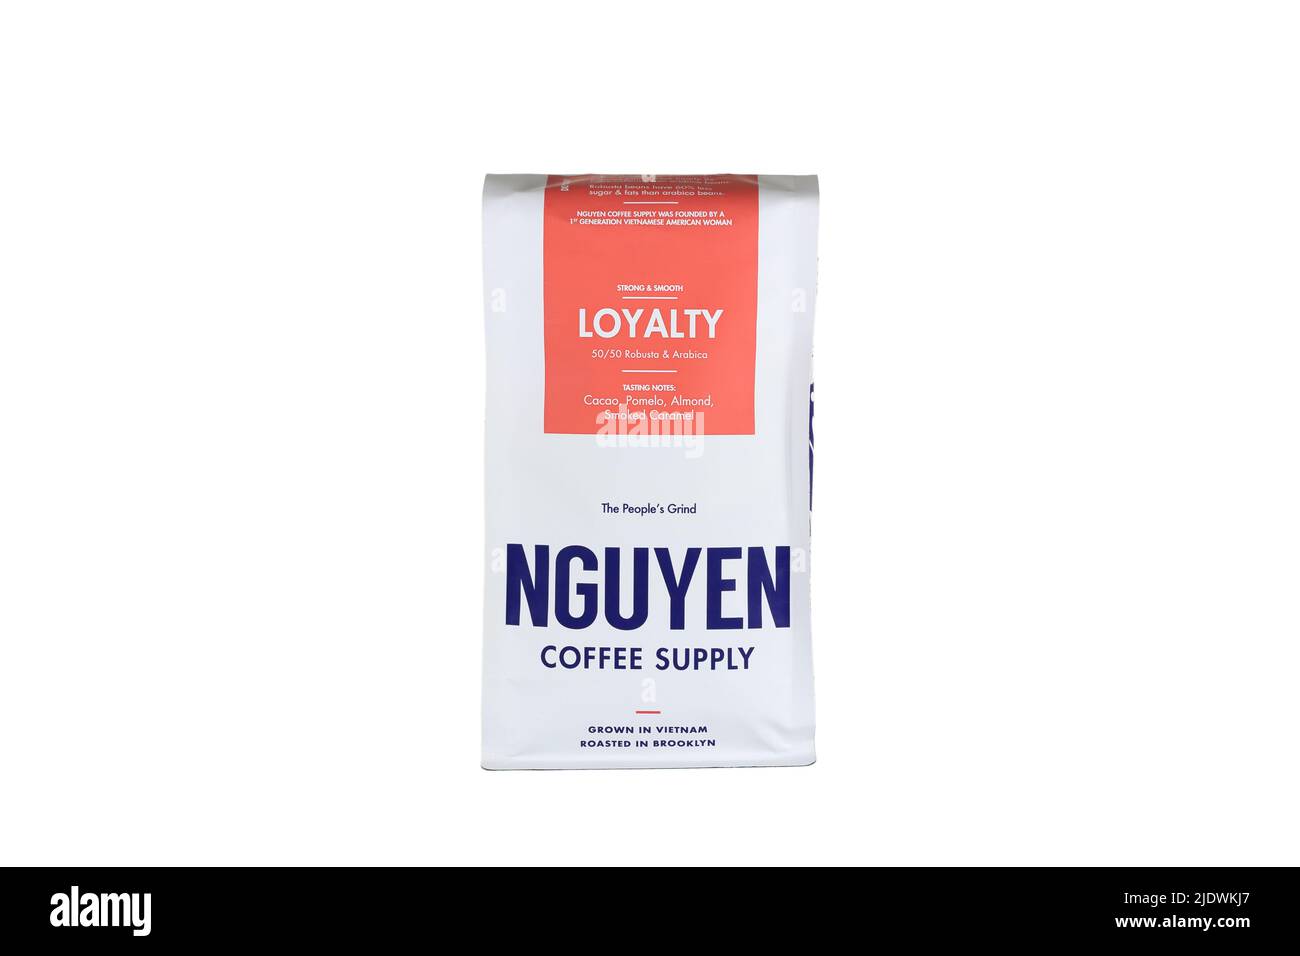 Un sac de café vietnamien « Loyalty » de Nguyen Coffee Supply isolé sur fond blanc. Image découpée pour illustration et usage éditorial. Banque D'Images